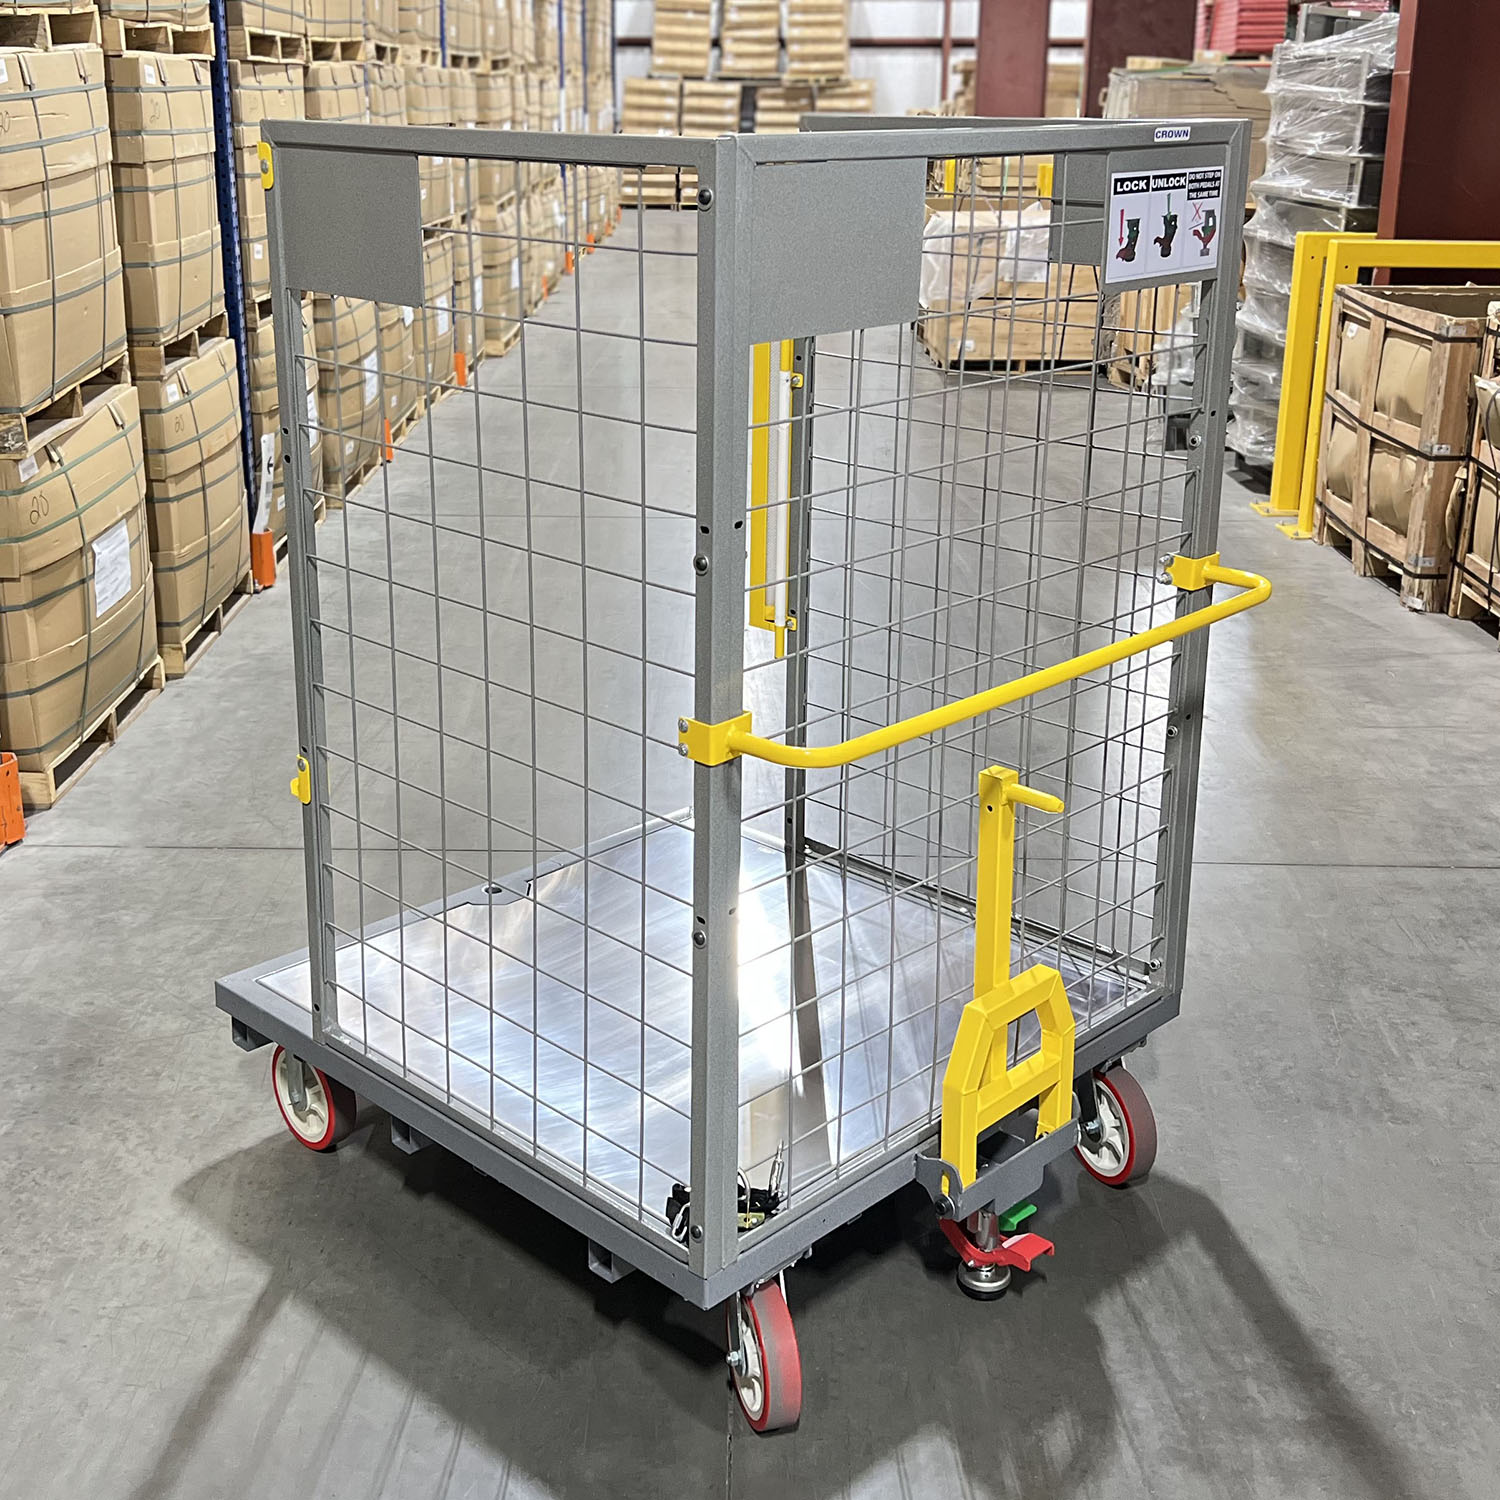 Cage Carts & Aluminum Deck Order Picker Carts